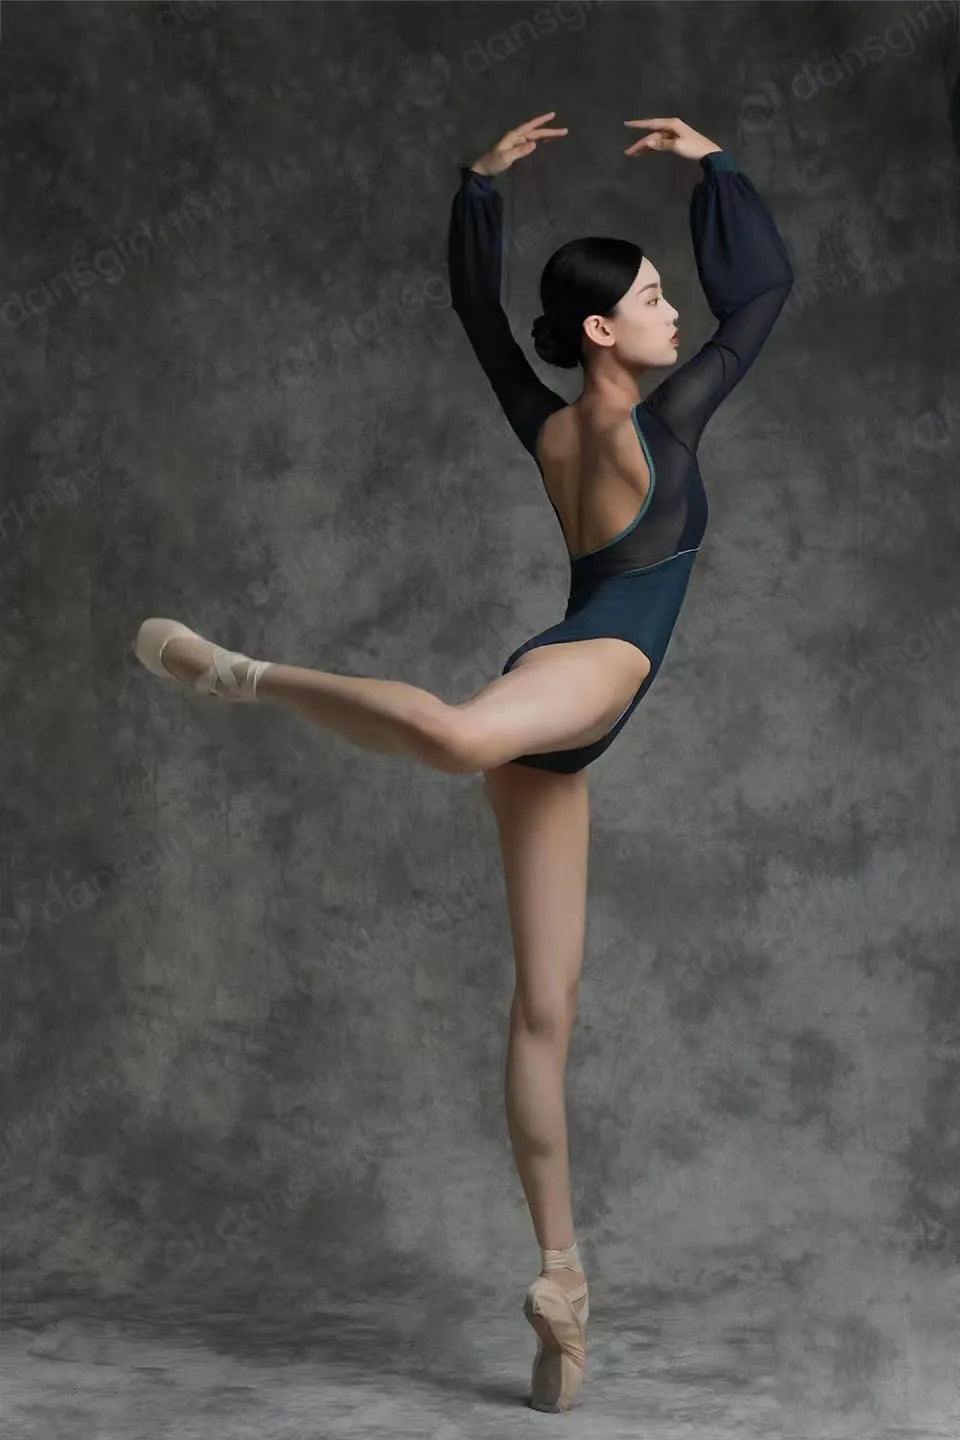 danseuse de ballet portant un justaucorps noir faisant une pose arabesque